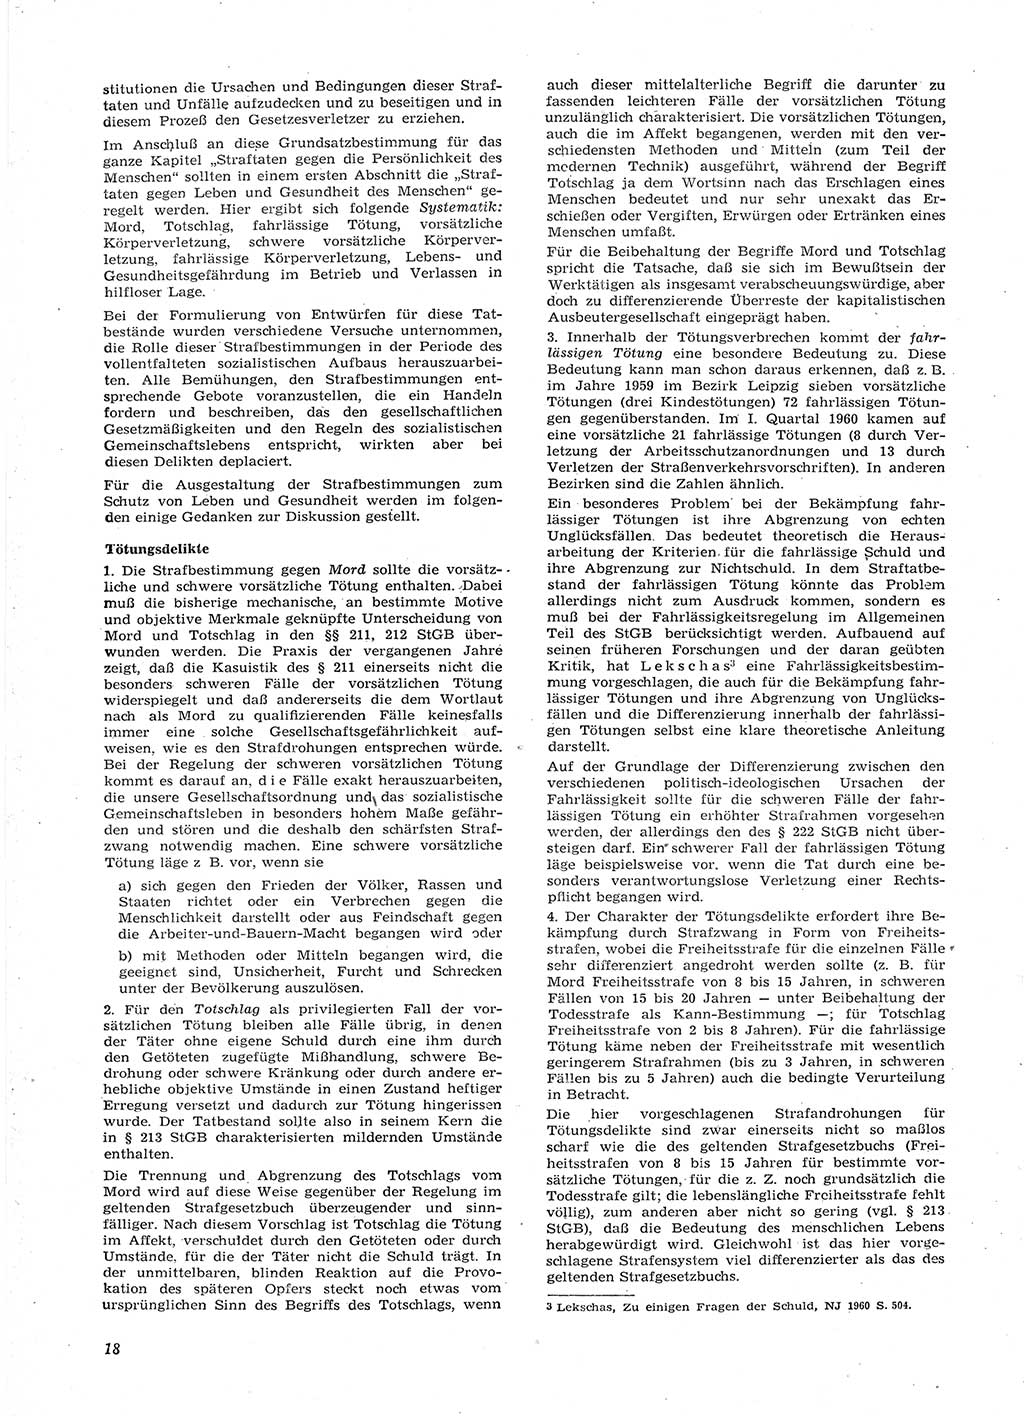 Neue Justiz (NJ), Zeitschrift für Recht und Rechtswissenschaft [Deutsche Demokratische Republik (DDR)], 15. Jahrgang 1961, Seite 18 (NJ DDR 1961, S. 18)